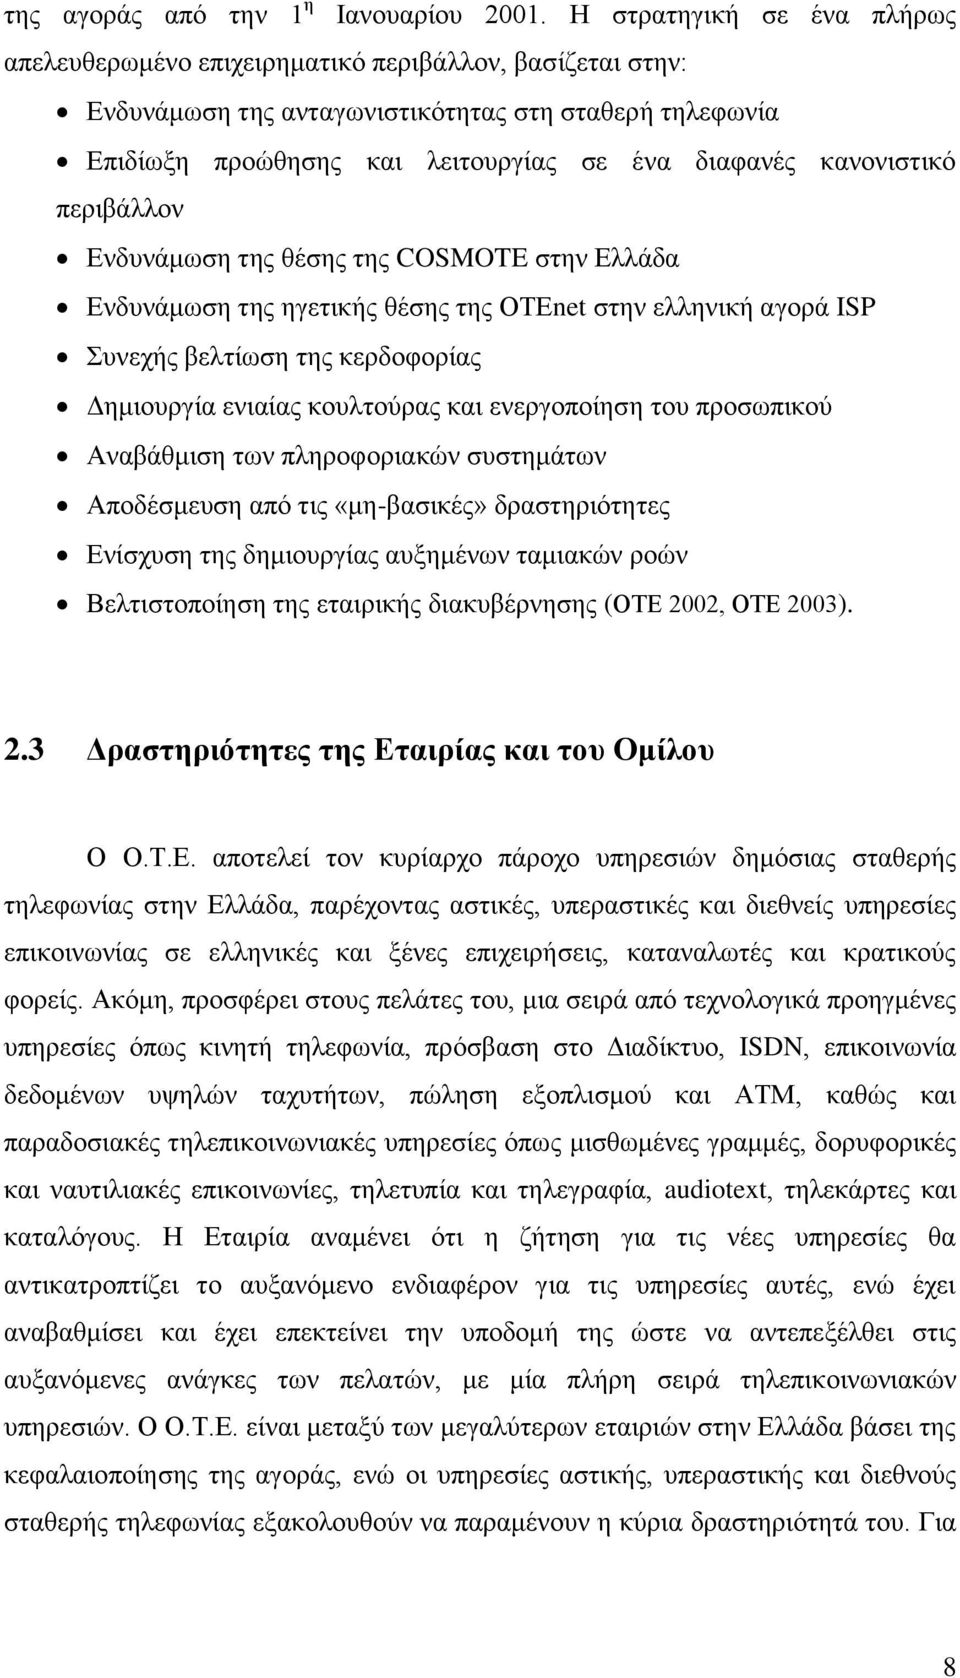 κανονιστικό περιβάλλον Ενδυνάμωση της θέσης της COSMOTE στην Ελλάδα Ενδυνάμωση της ηγετικής θέσης της ΟΤΕnet στην ελληνική αγορά ISP Συνεχής βελτίωση της κερδοφορίας Δημιουργία ενιαίας κουλτούρας και